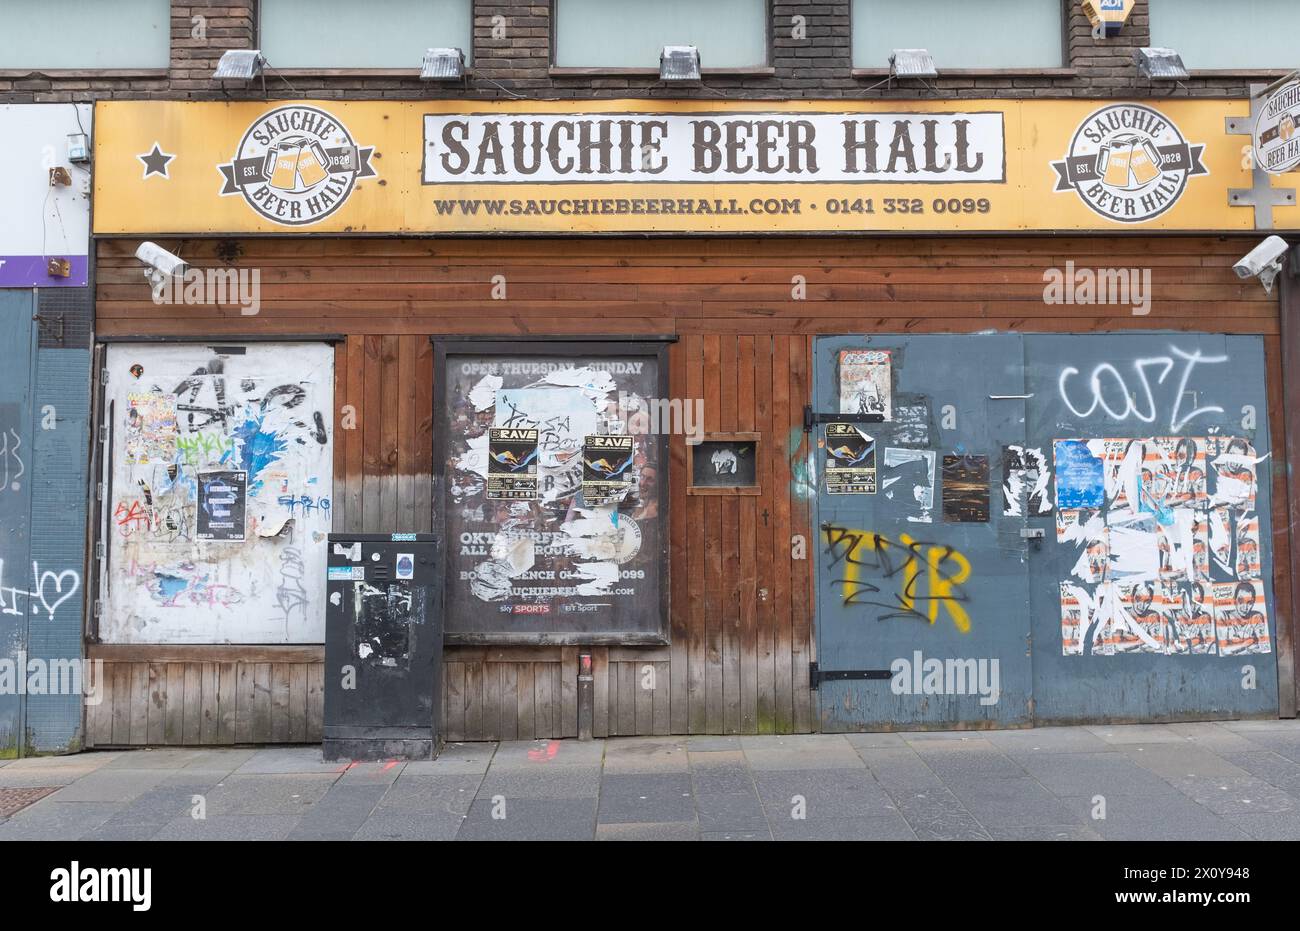 Façade du Sauchie Beer Hall, maintenant fermé, à Sauchiehall Street, au centre-ville de Glasgow, en Écosse. Cela montre que le secteur de l’hôtellerie est en difficulté. Banque D'Images